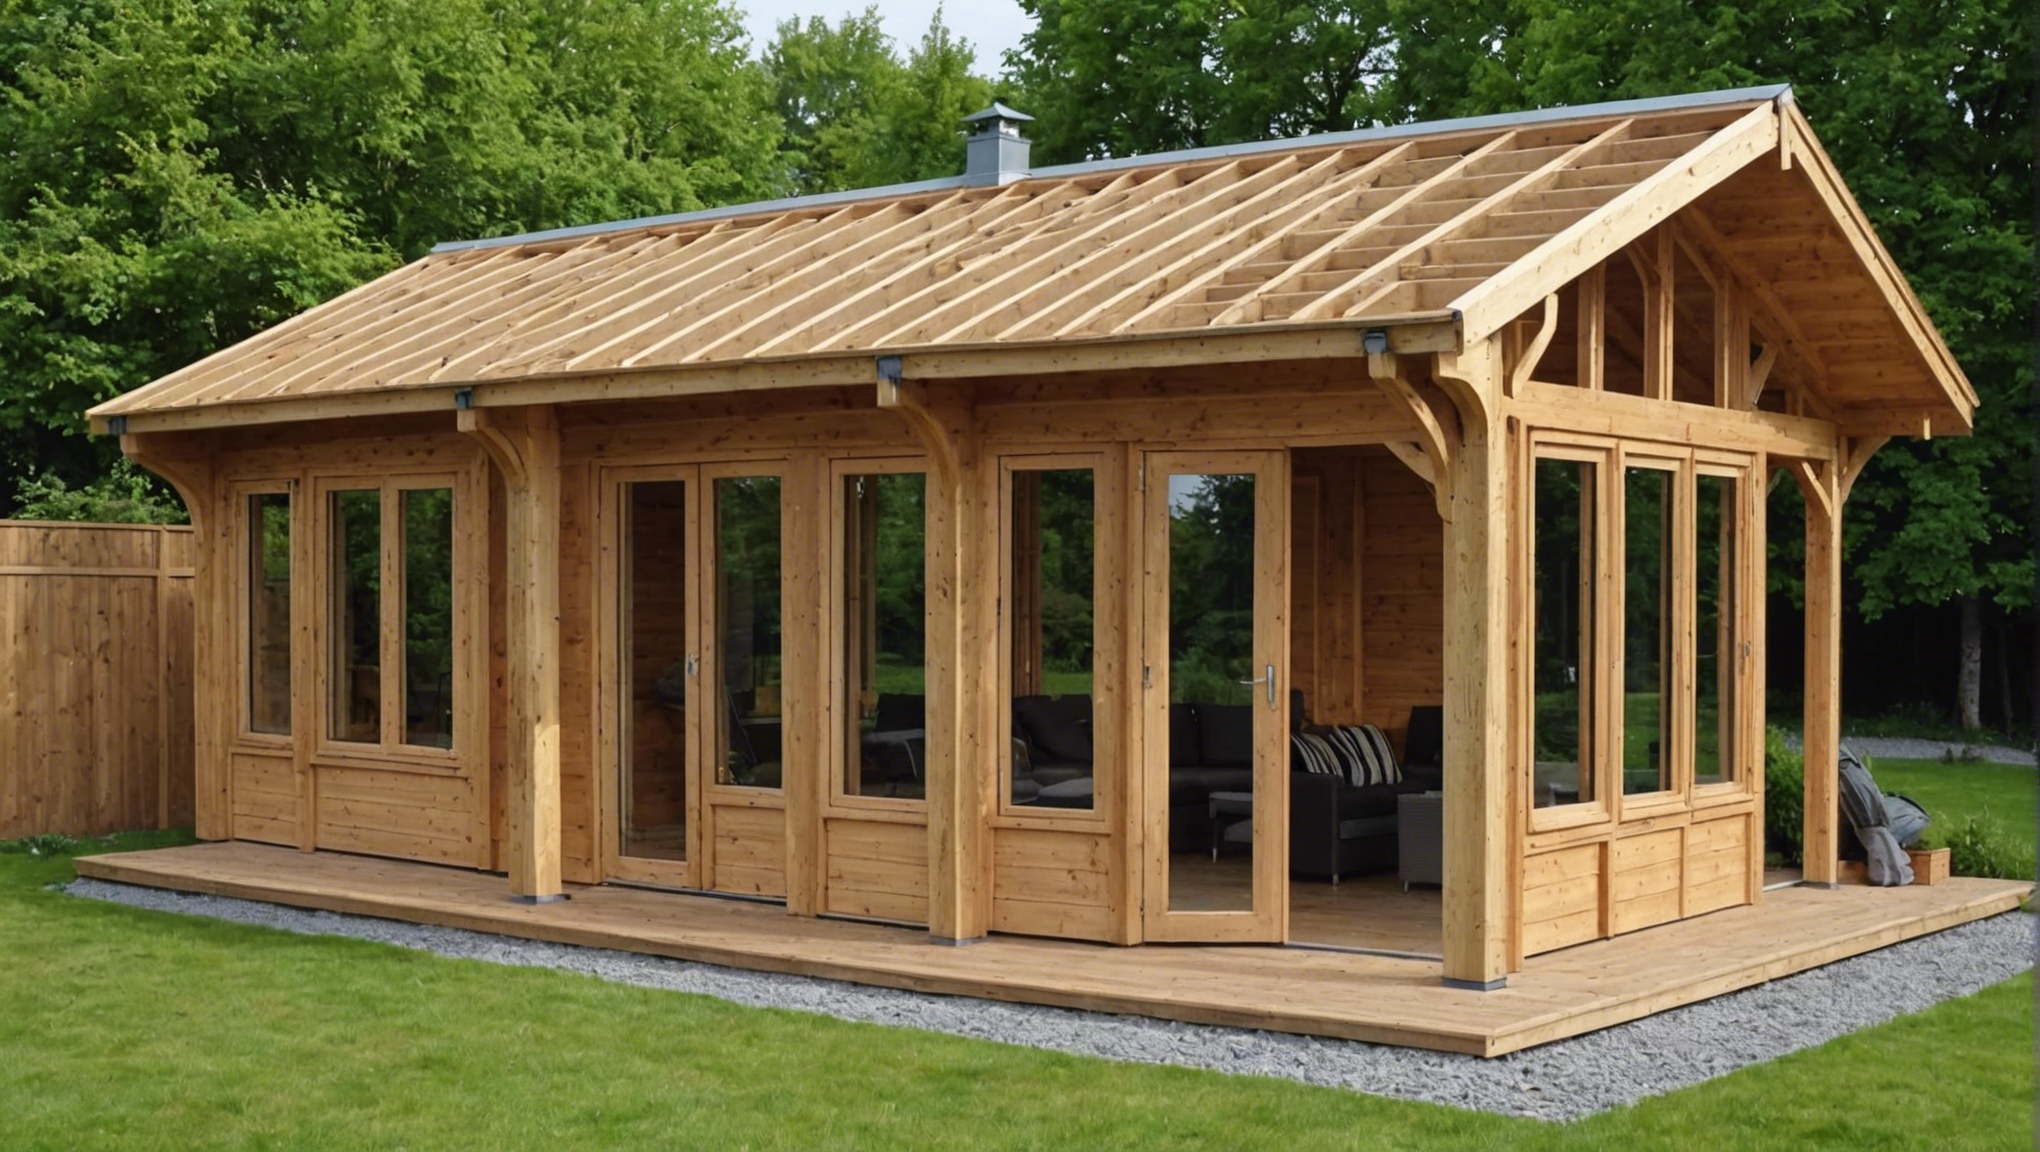 découvrez comment construire une magnifique clôture en bois pour embellir votre maison avec nos astuces et recommandations.